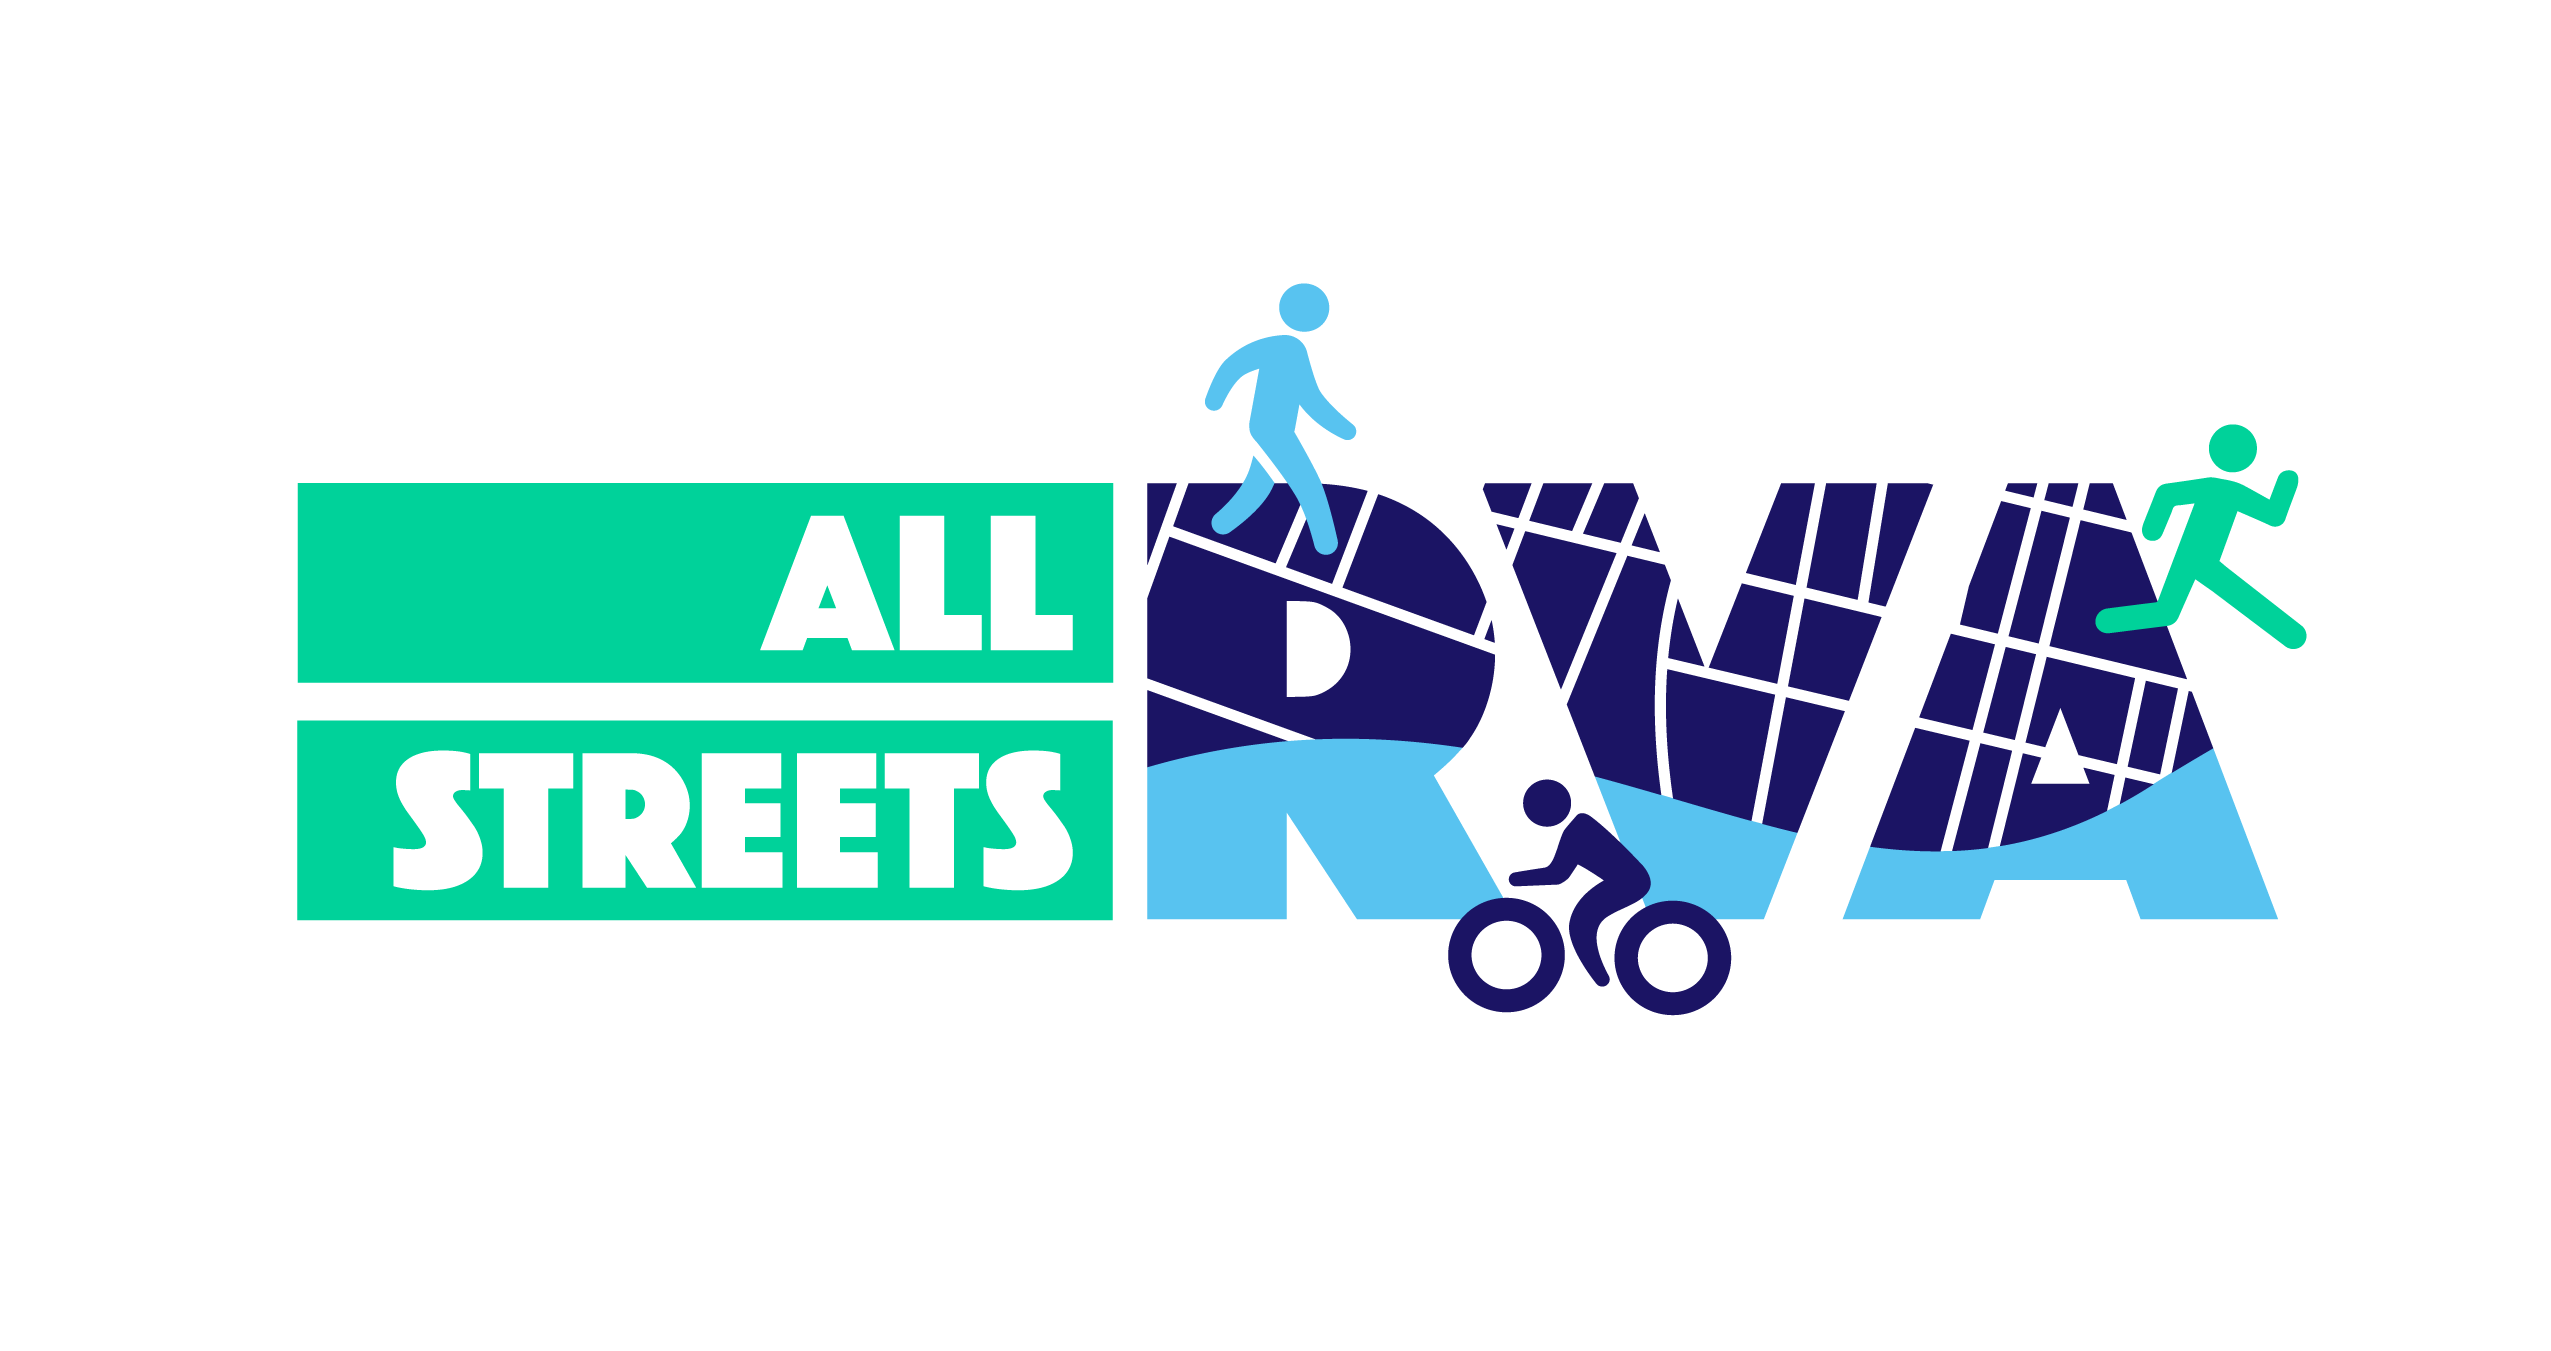 All Streets RVA